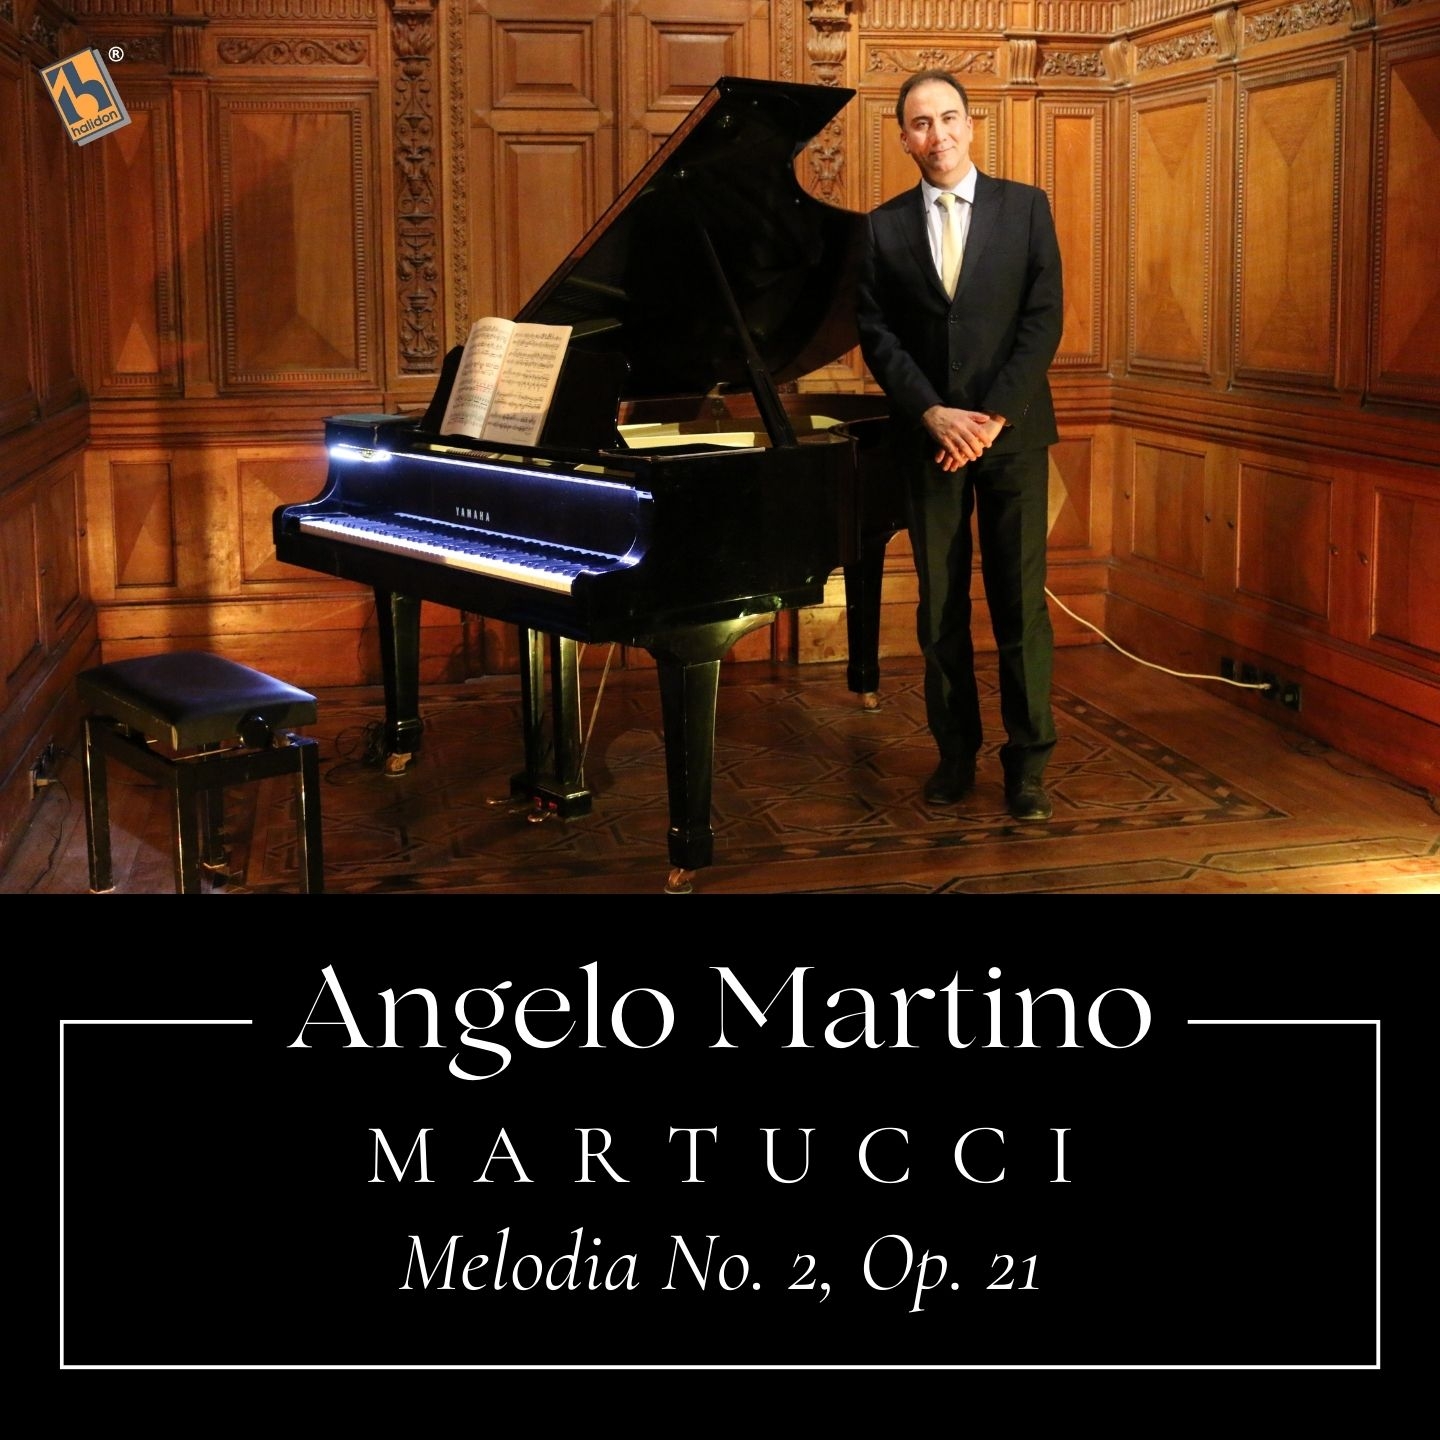 Martucci: Melodia No. 2, Op. 21